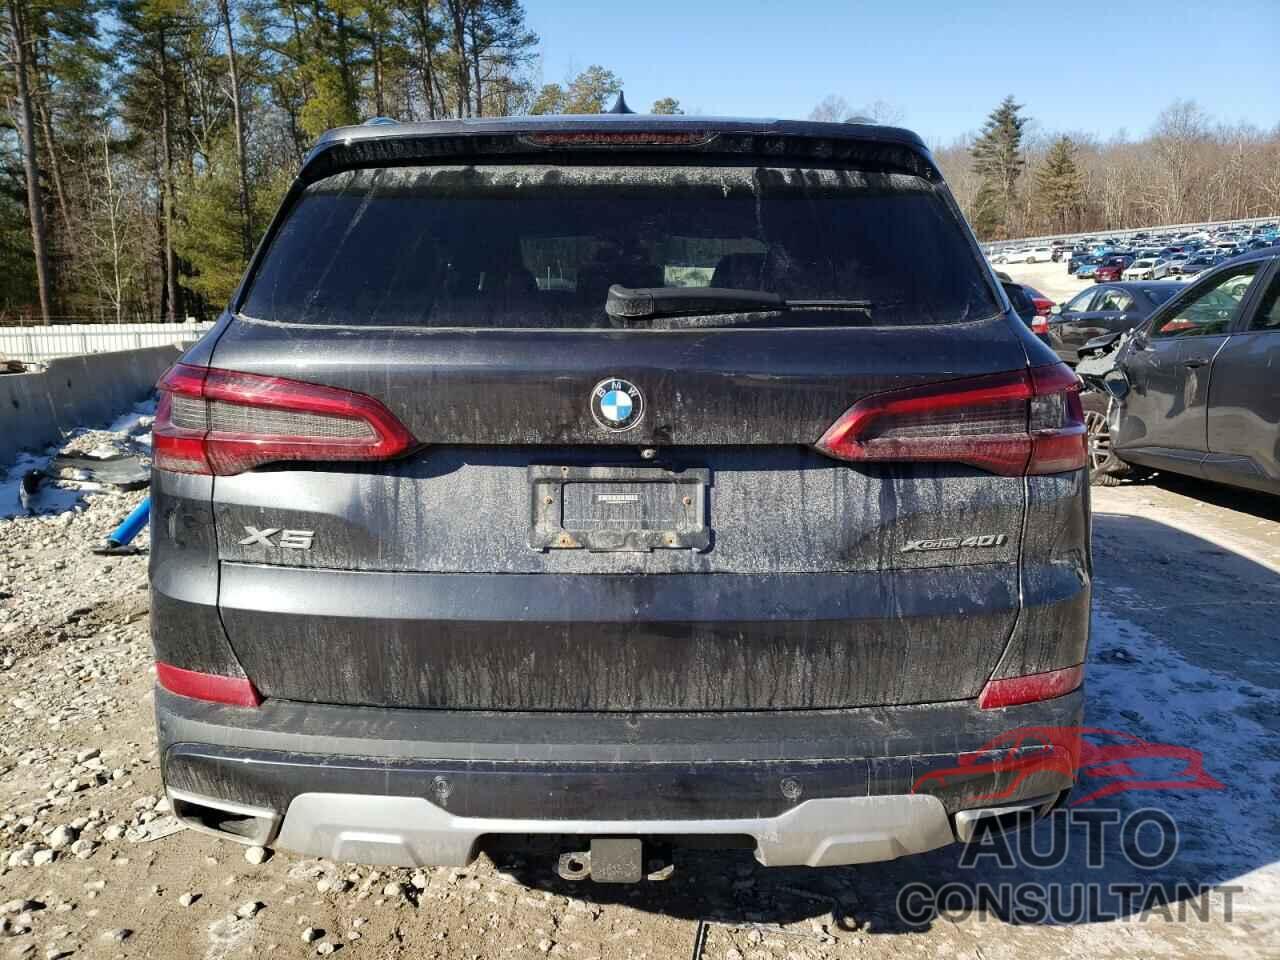 BMW X5 2019 - 5UXCR6C51KLL34714